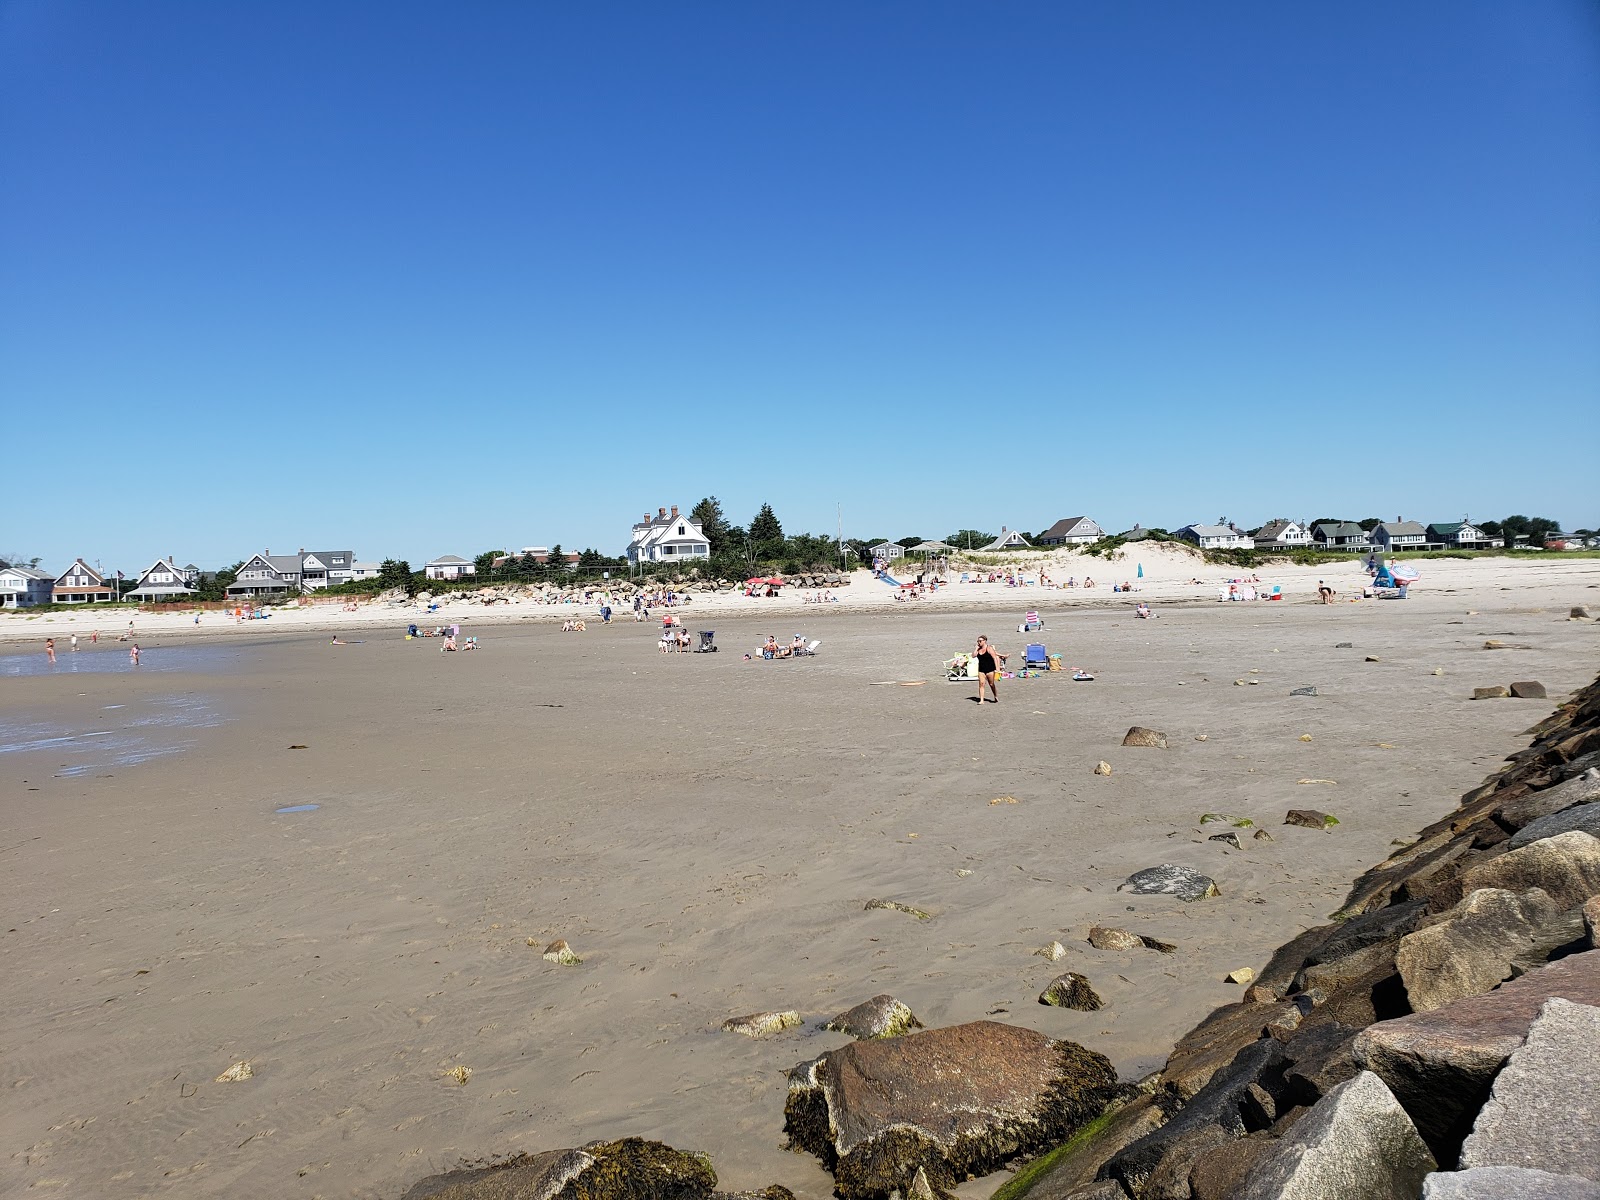 Green Harbor beach'in fotoğrafı geniş plaj ile birlikte